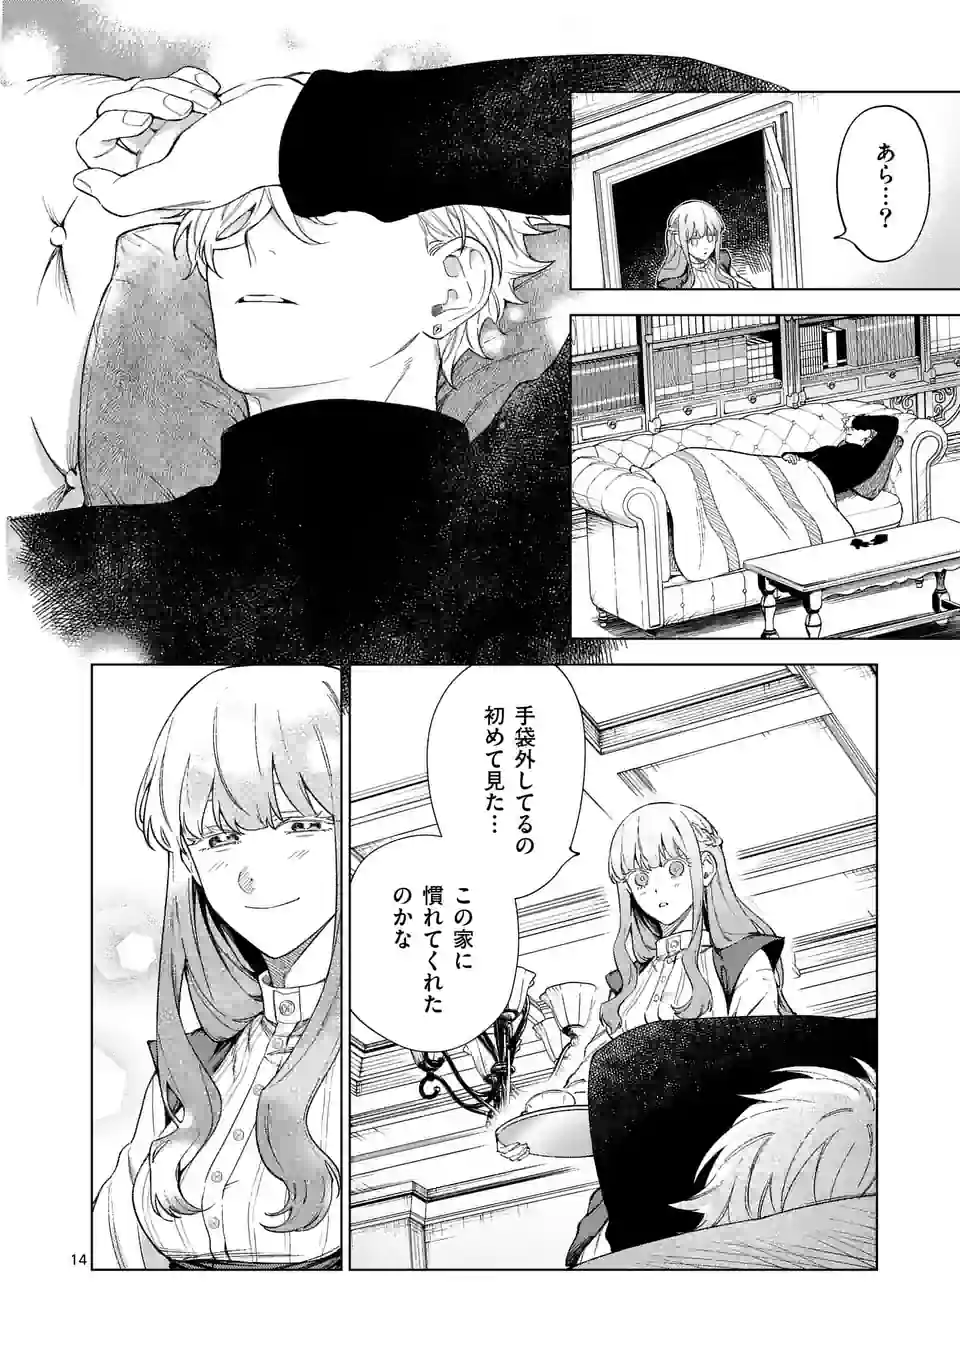 Mou Kyoumi ga Nai to Rikonsareta Reijou no Igai to Tanoshii Shinseikatsu - Chapter 9.5 - Page 2